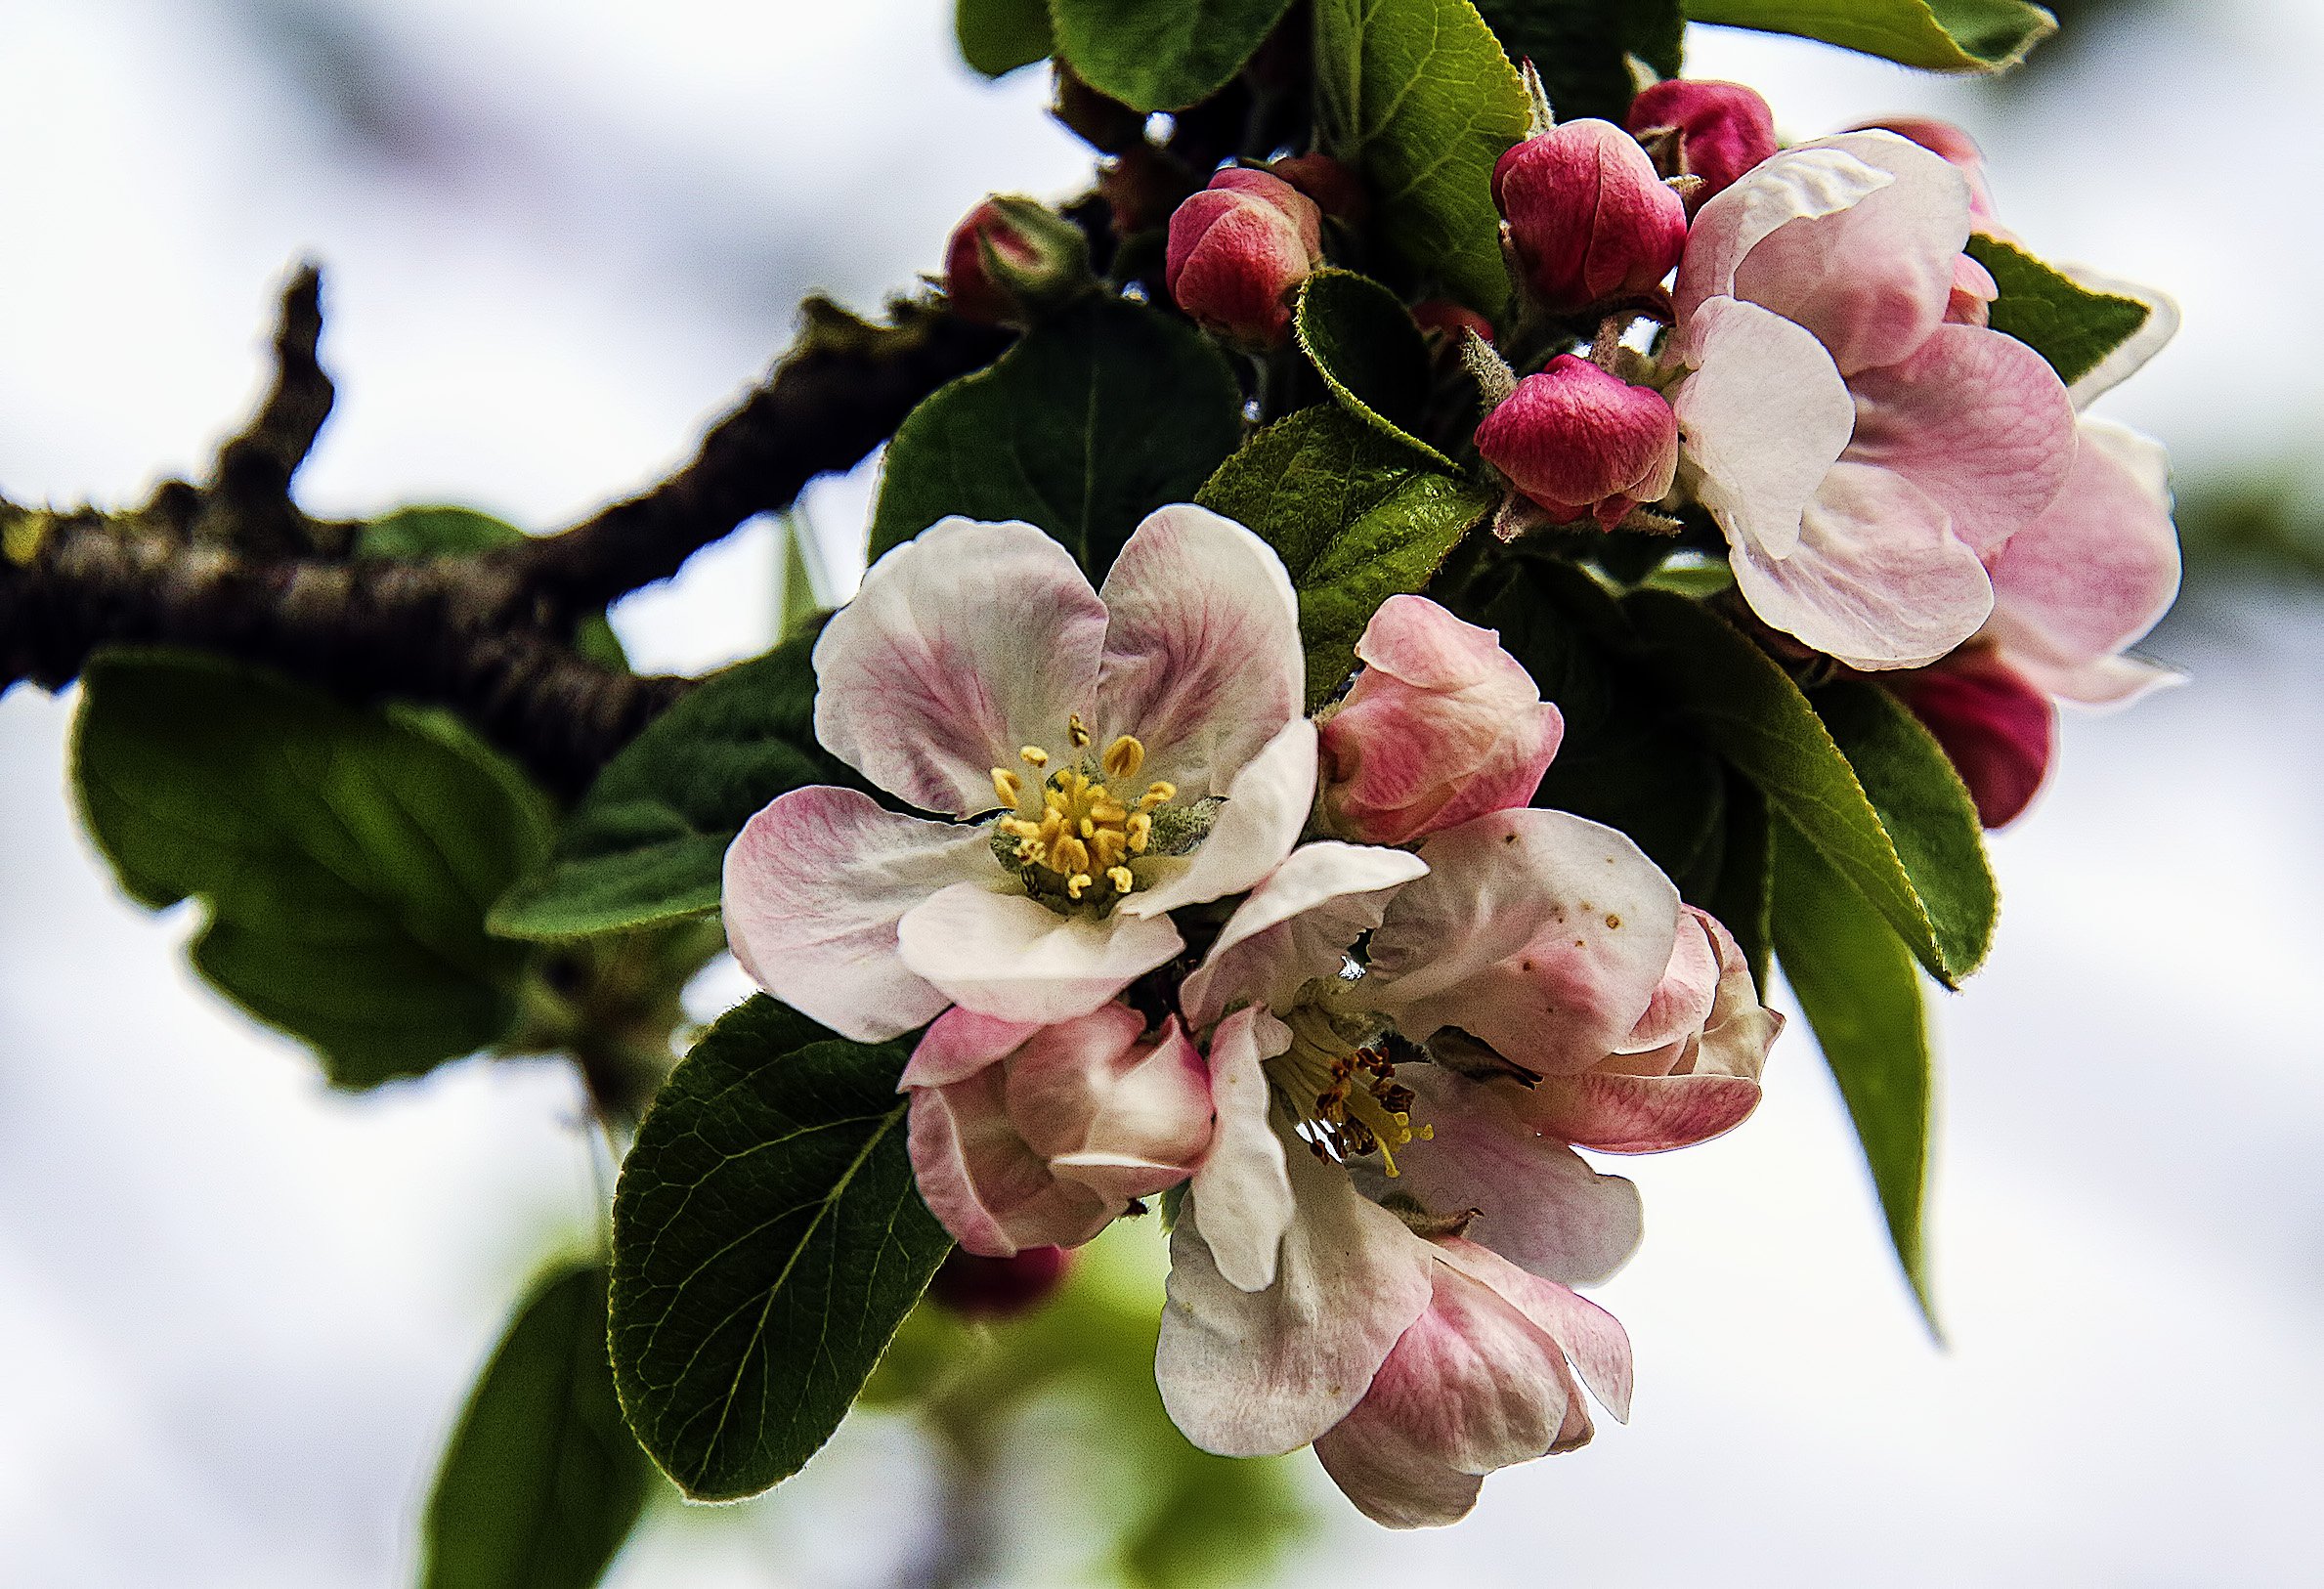 Цветы яблони. Букет из цветущей яблони. Яблони в цвету Мартынов. Майские выходные на дачном участке цветут яблони.